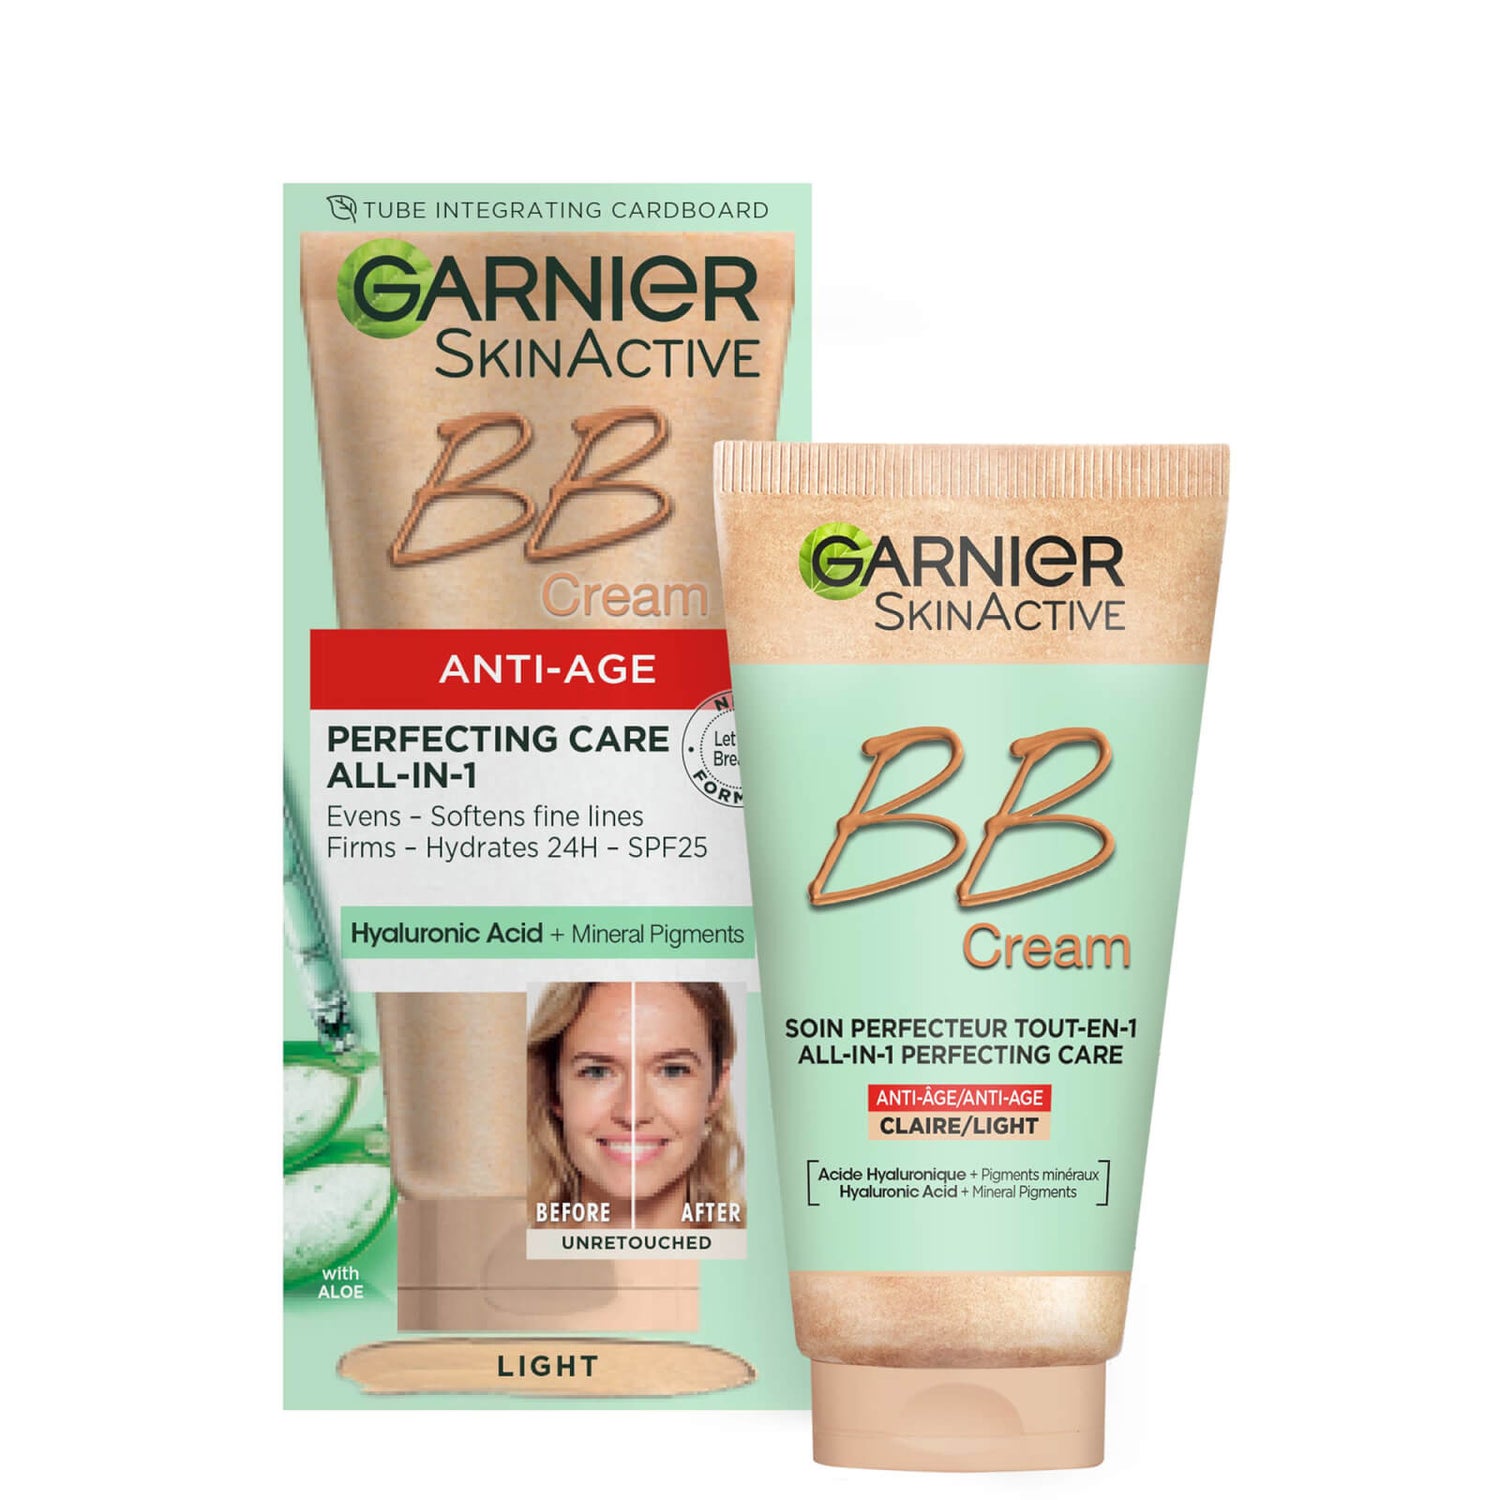 Garnier SkinActive BB cream idratante colorata anti-età SPF25 - Light